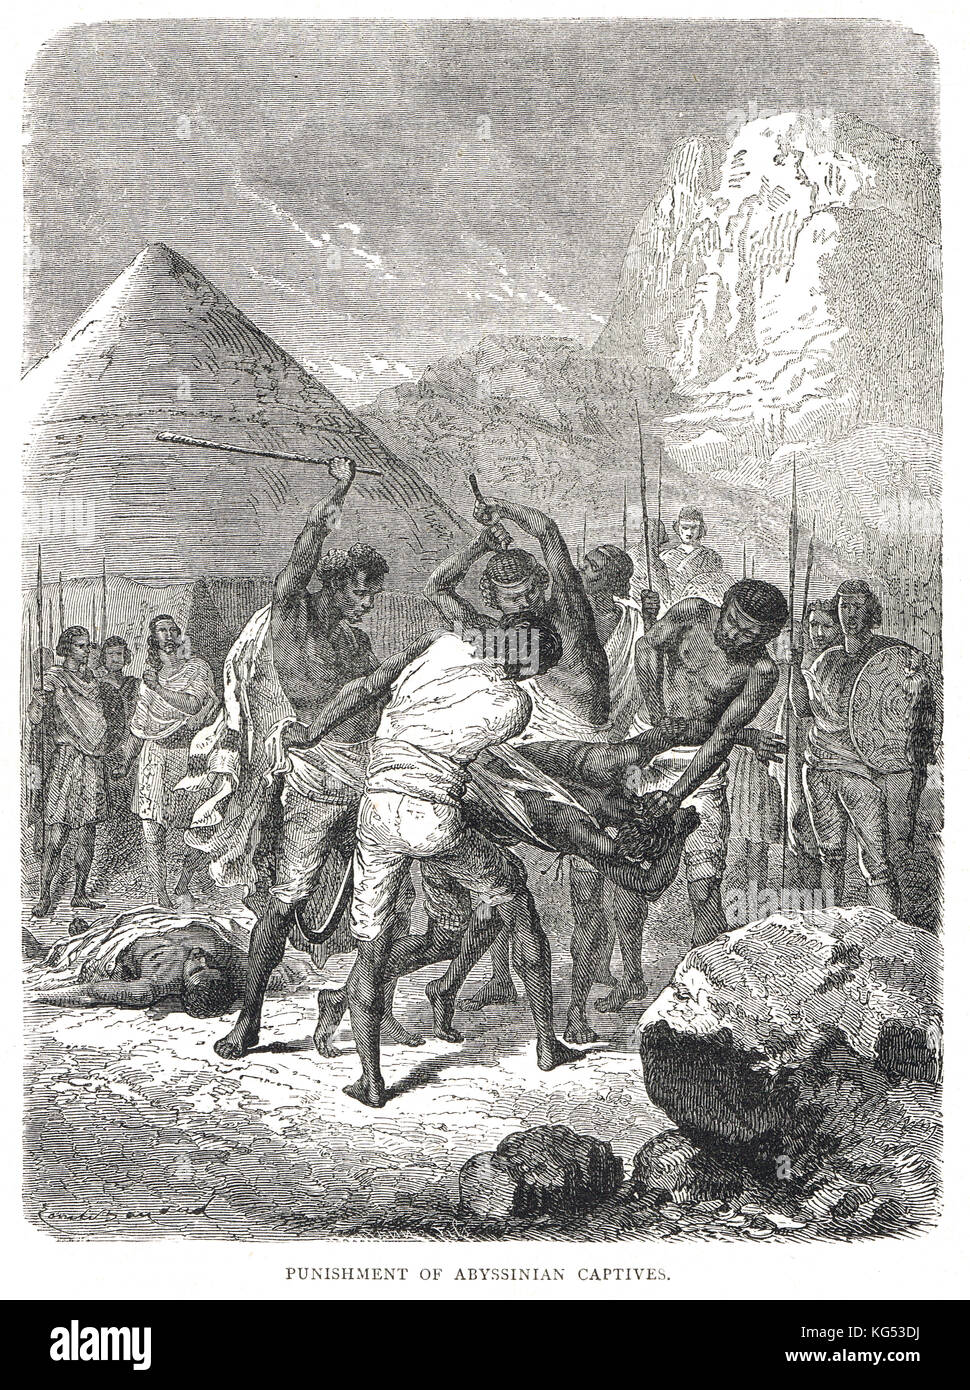 Punition Abyssinienne des otages autochtones, avril 1868, siège de Magdala, expédition britannique en Abyssinie, 1867-1868 Banque D'Images